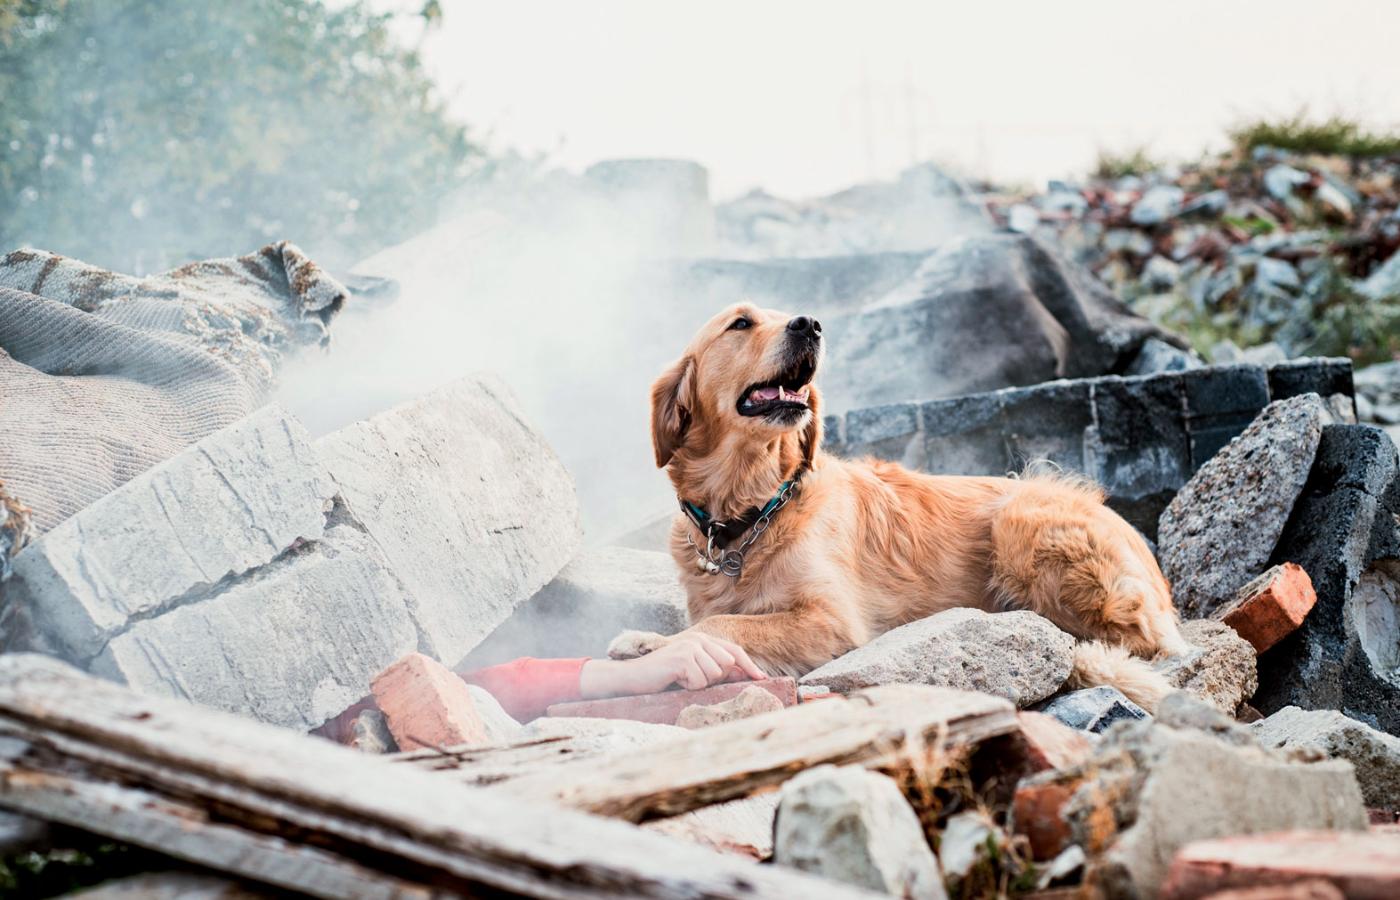 Zazwyczaj nim do akcji wkroczy pies, ratownicy są wycofywani z gruzowiska. Żeby psu nie pomyliły się zapachy.